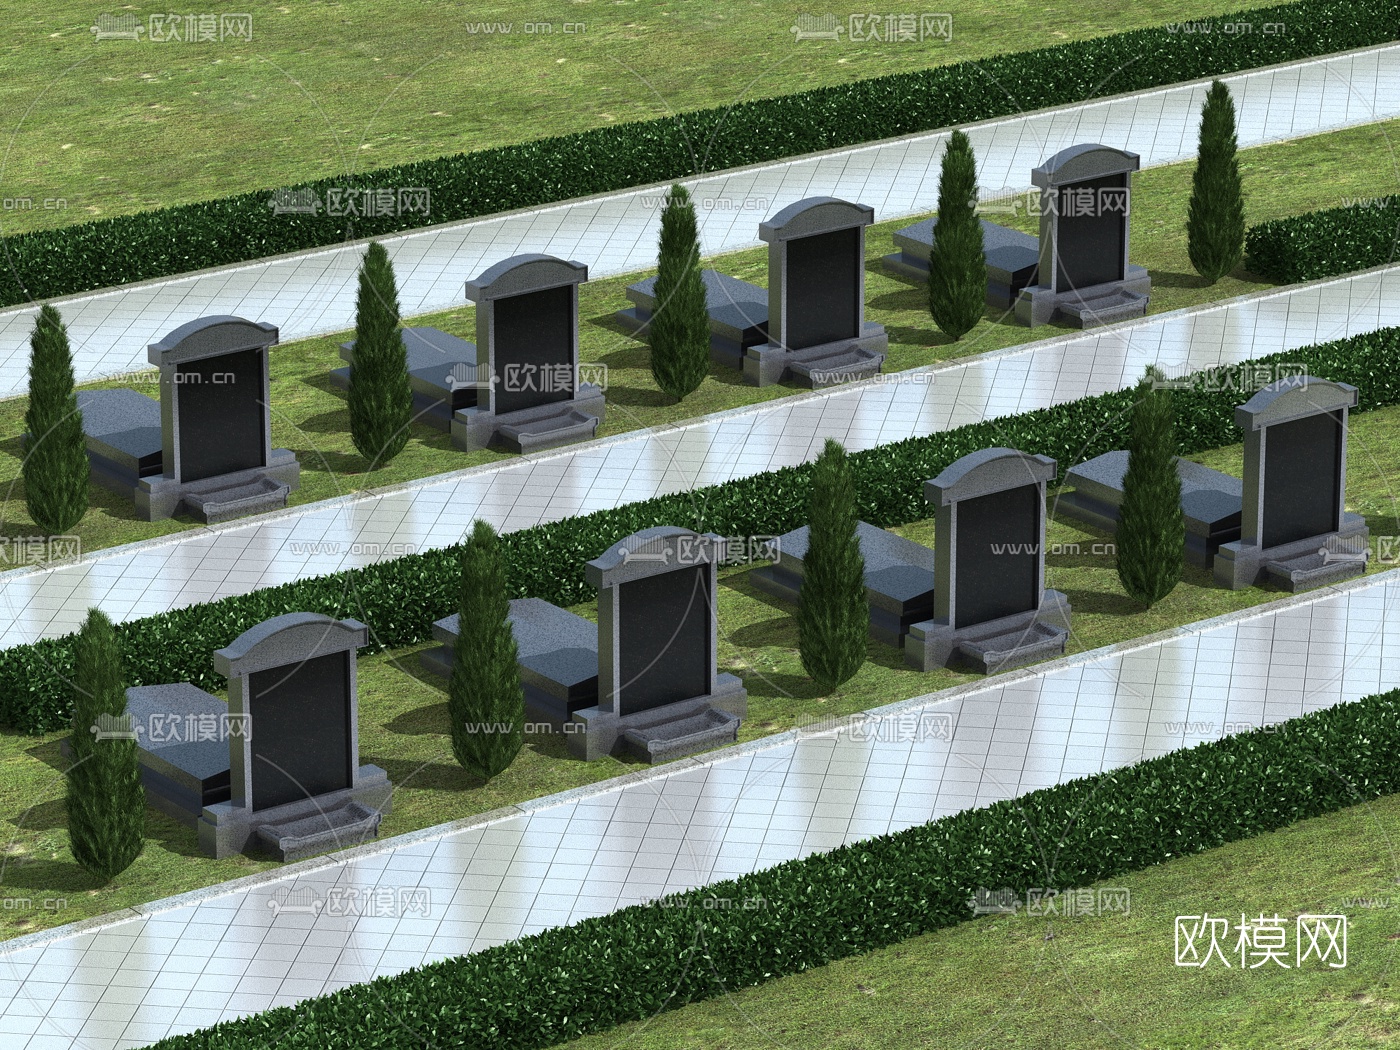 土葬坟墓设计图_土葬坟墓设计图分享展示